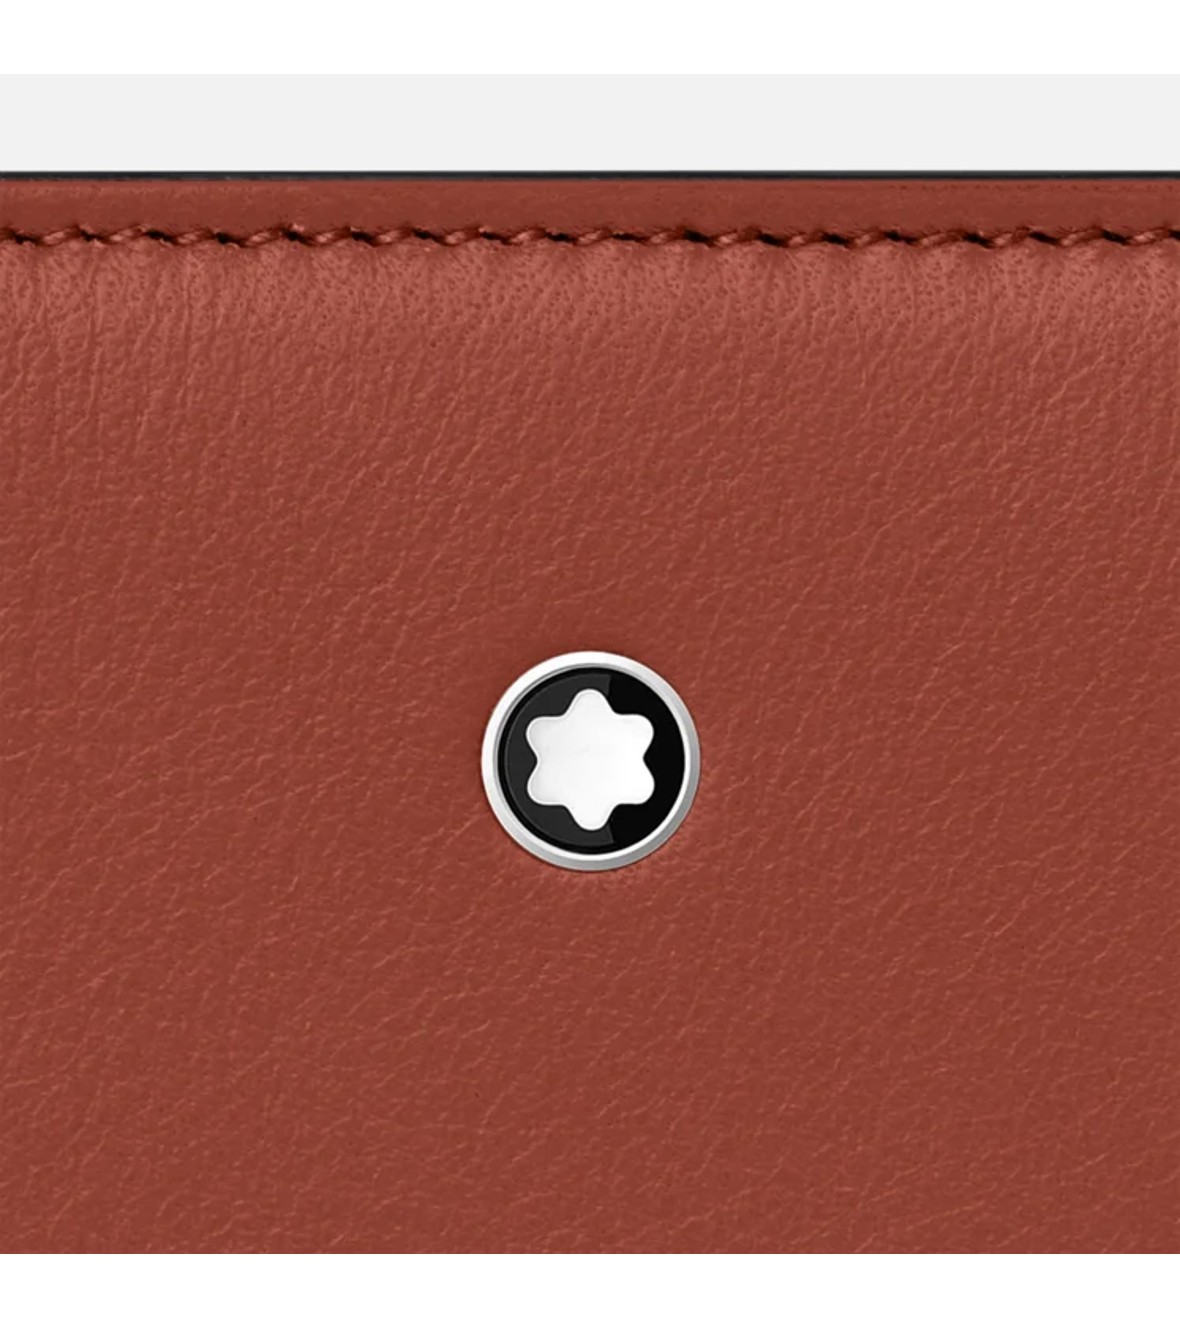 Meisterstück Selection Soft wallet 12cc zip around